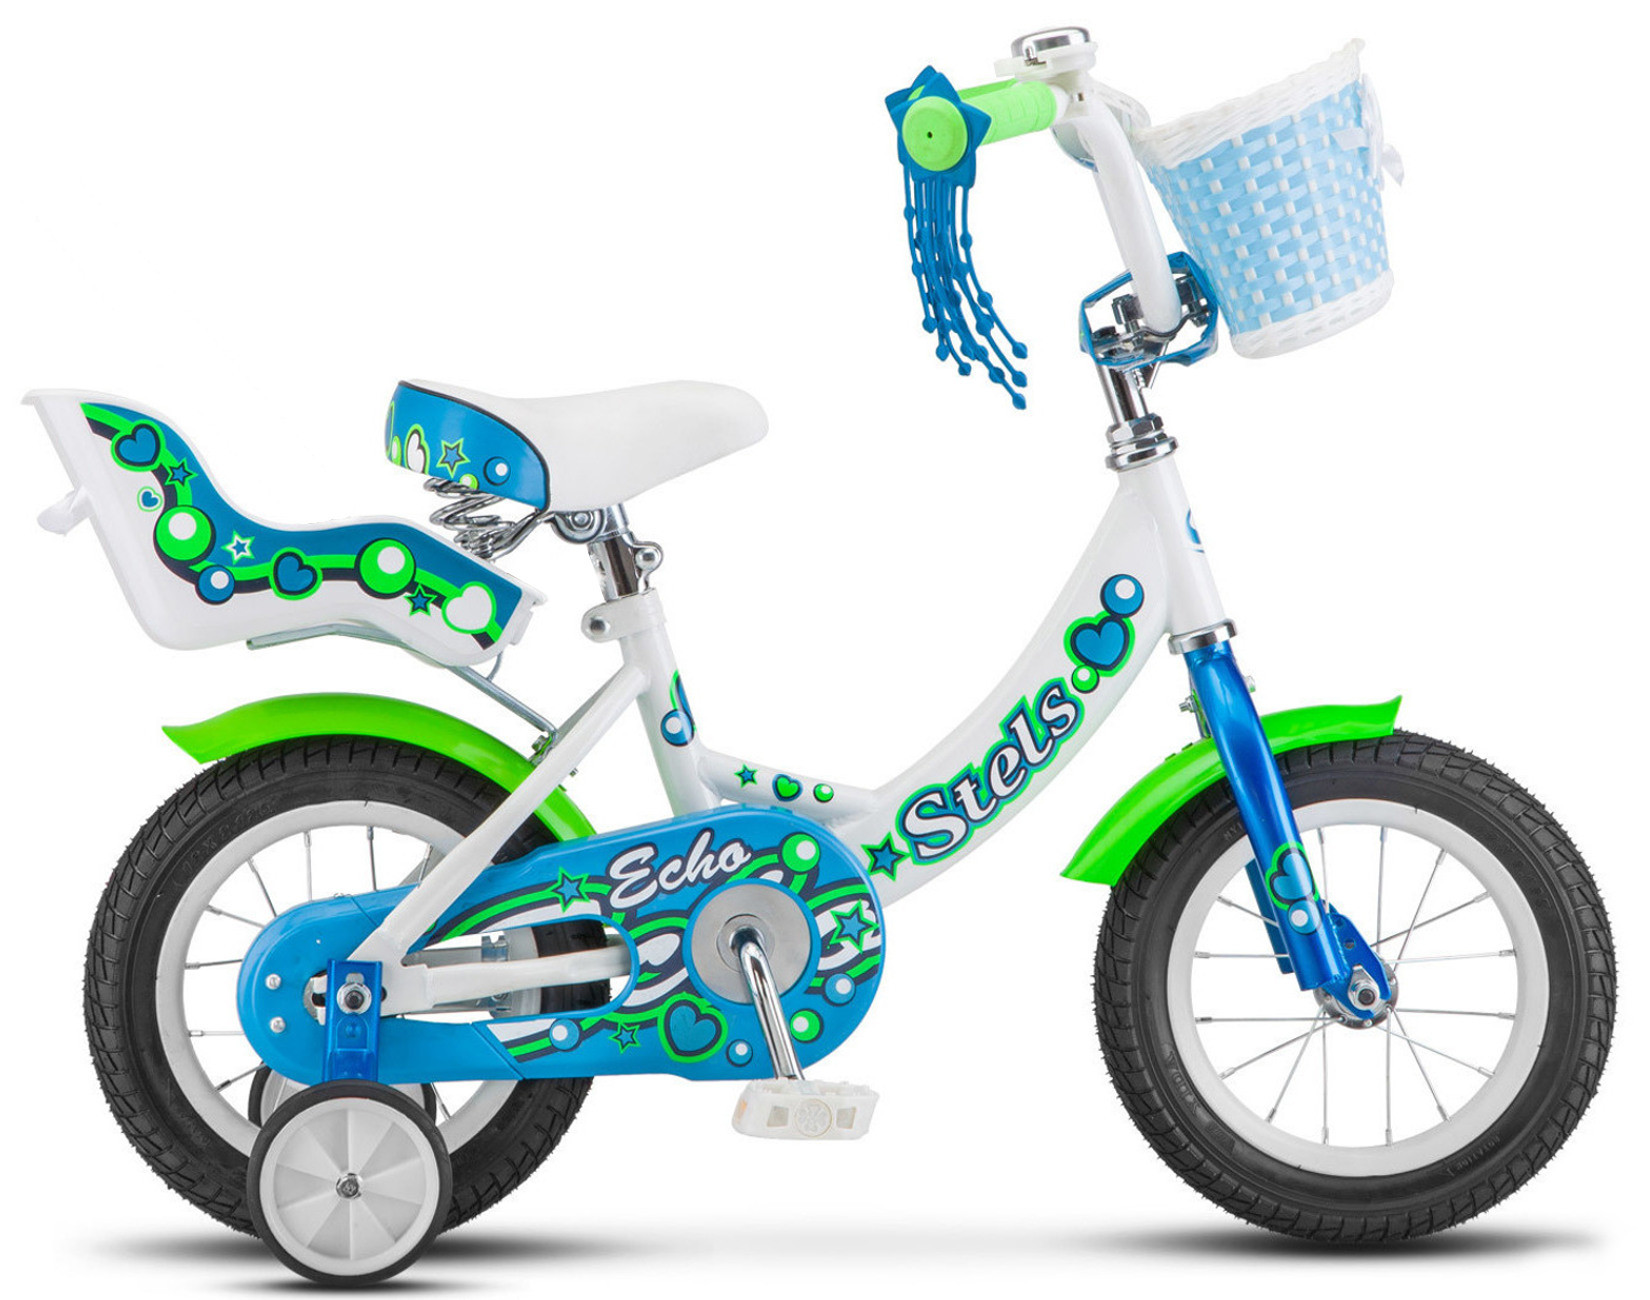 Детский велосипед Stels Echo 12 V020 (2018) белый - купить в Азбука Техники, цена на Мегамаркет